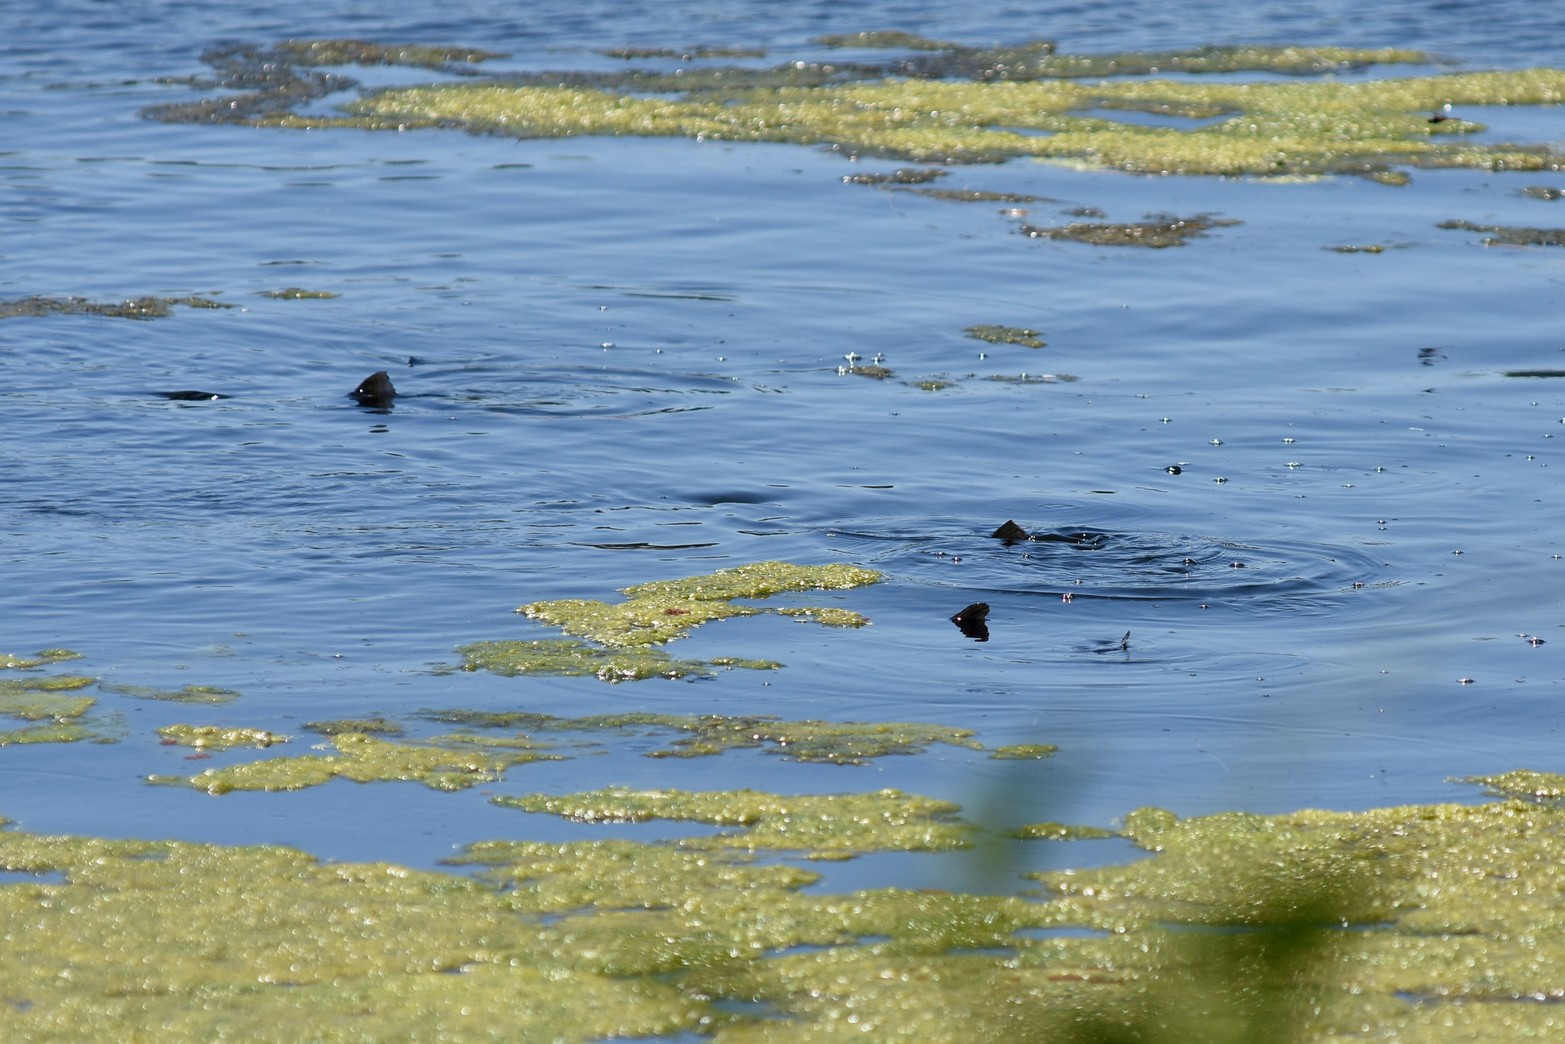 Las aletas del cardumen de pescados es un atractivo natural que tiene el lago.